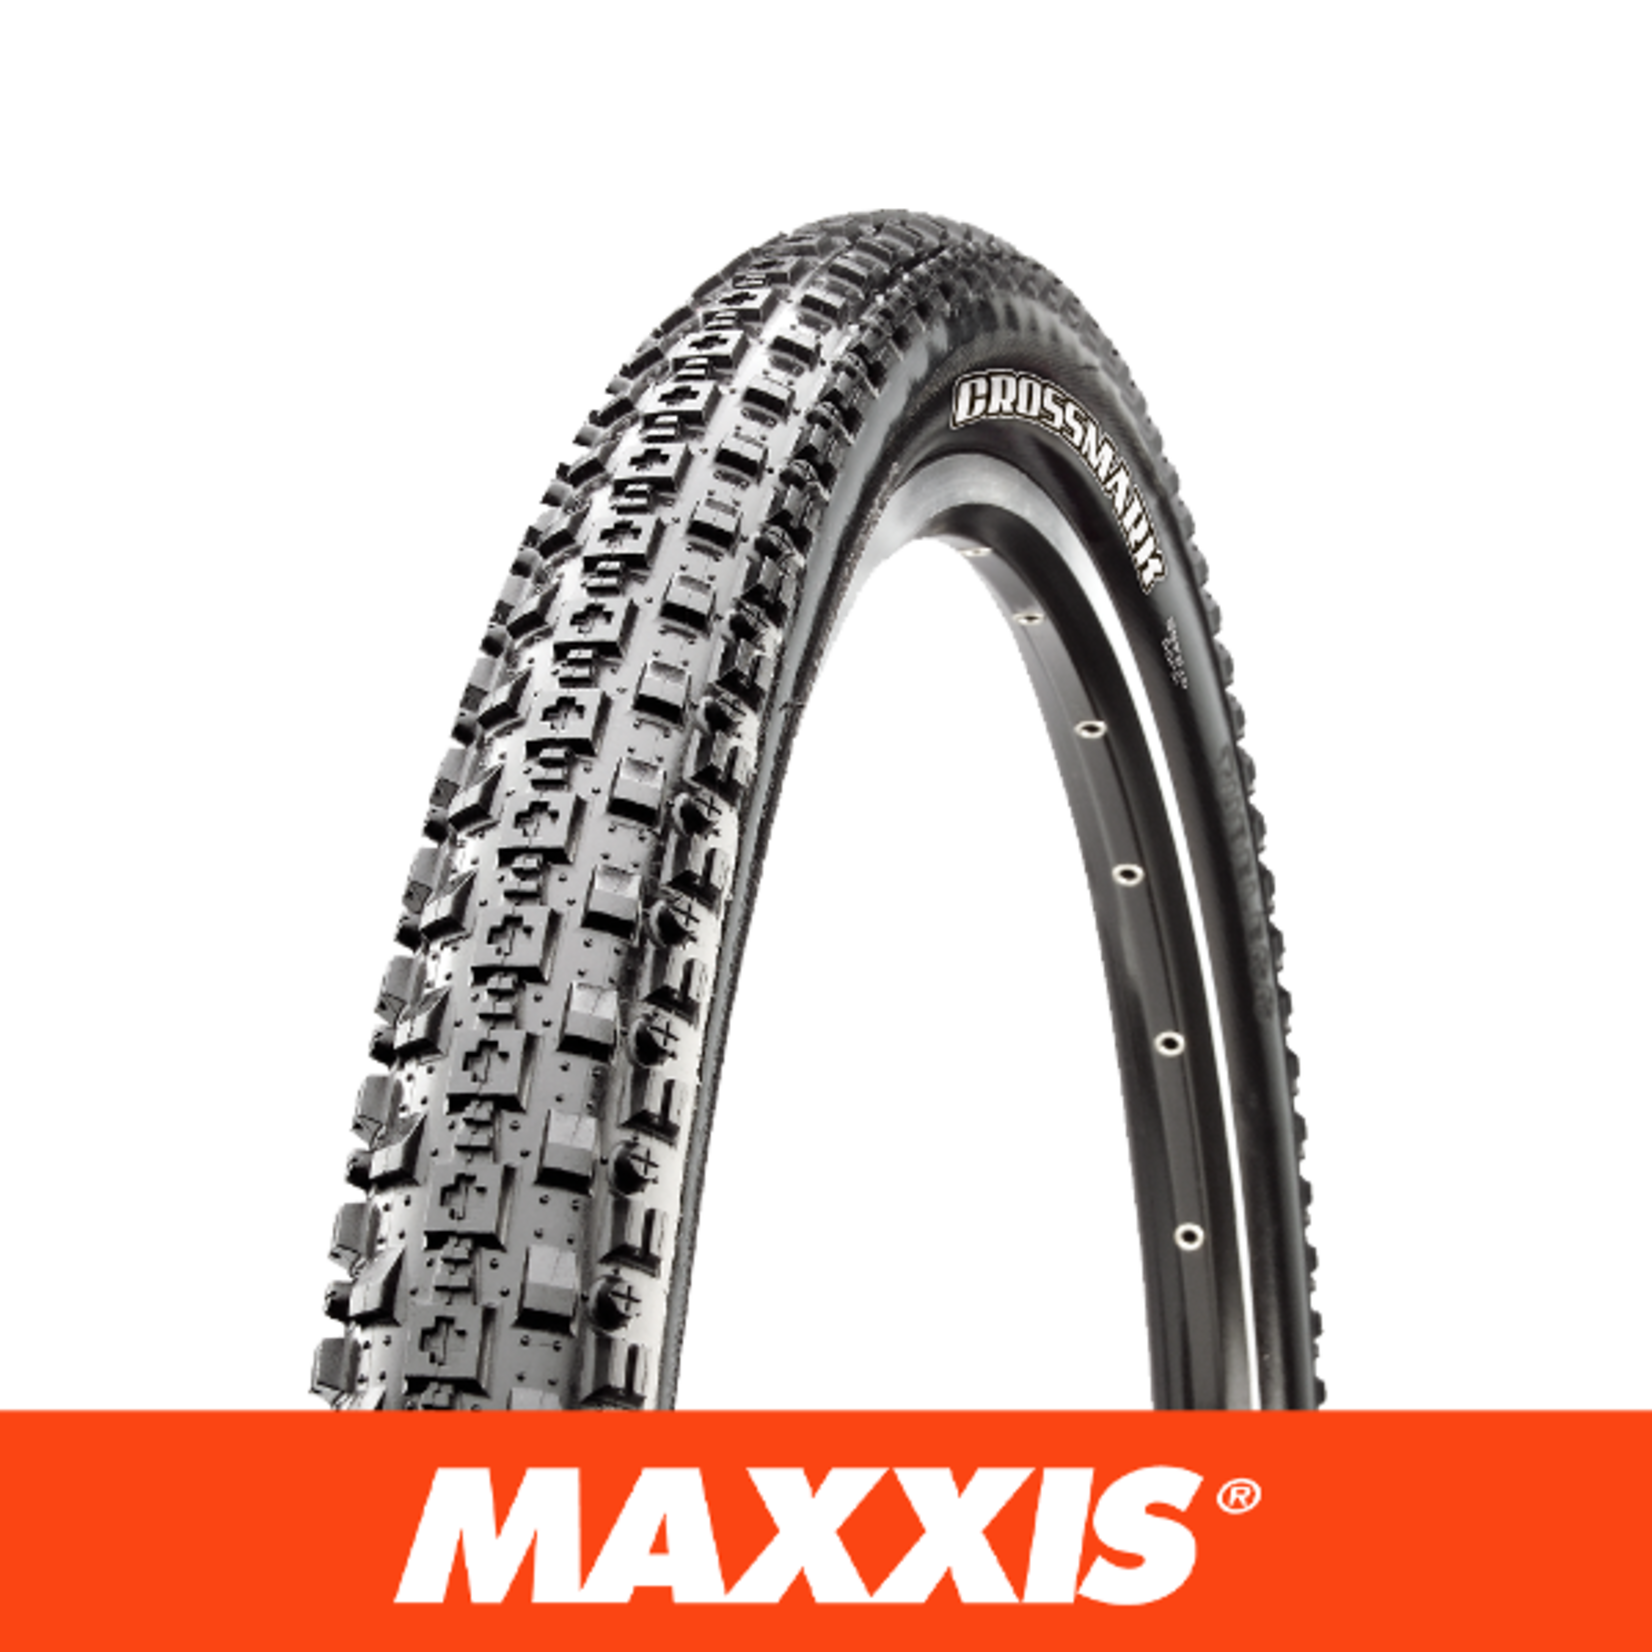 MAXXIS MAXXIS Crossmark 29 X 2.10 - Wire - 60 TPI - Single Compound - Black